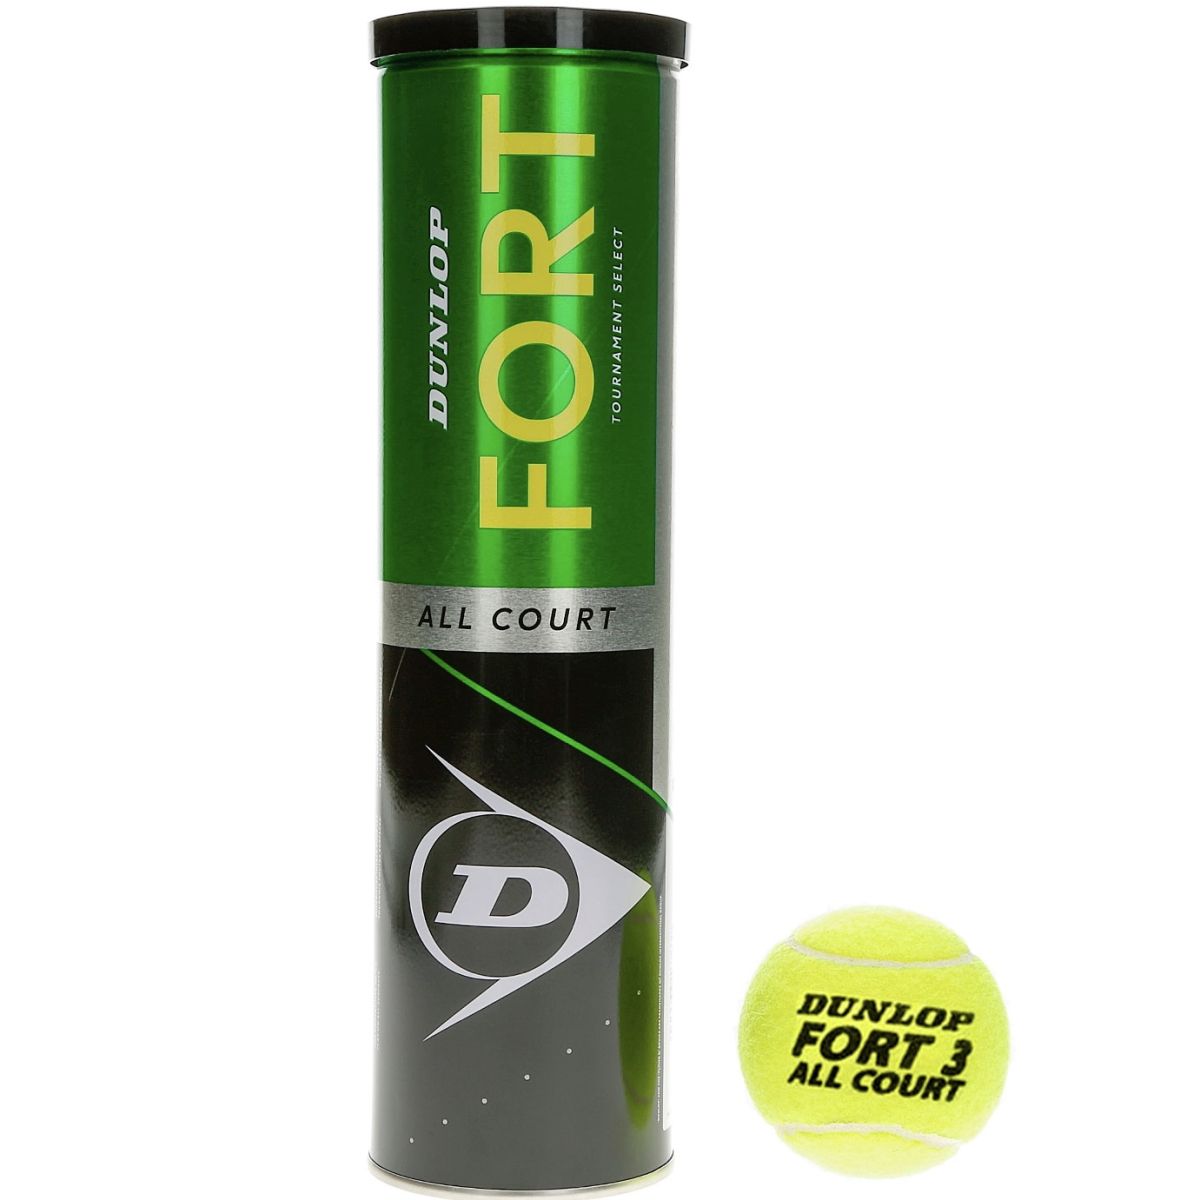 Dunlop Fort All Court Tennis Balls x 4 9601235